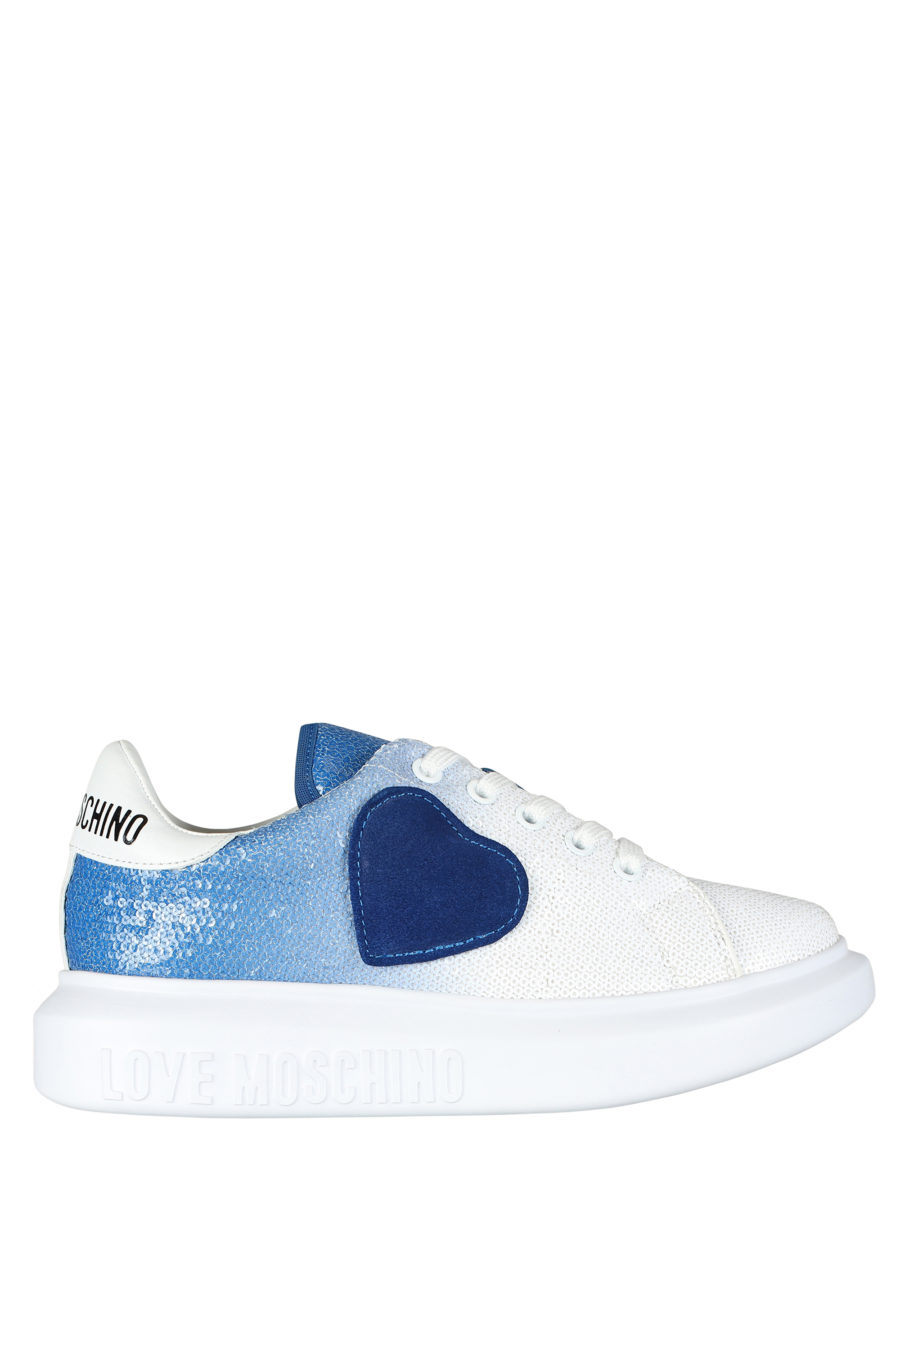 Zapatillas blancas con degrade azul y lentejuelas - IMG 5257